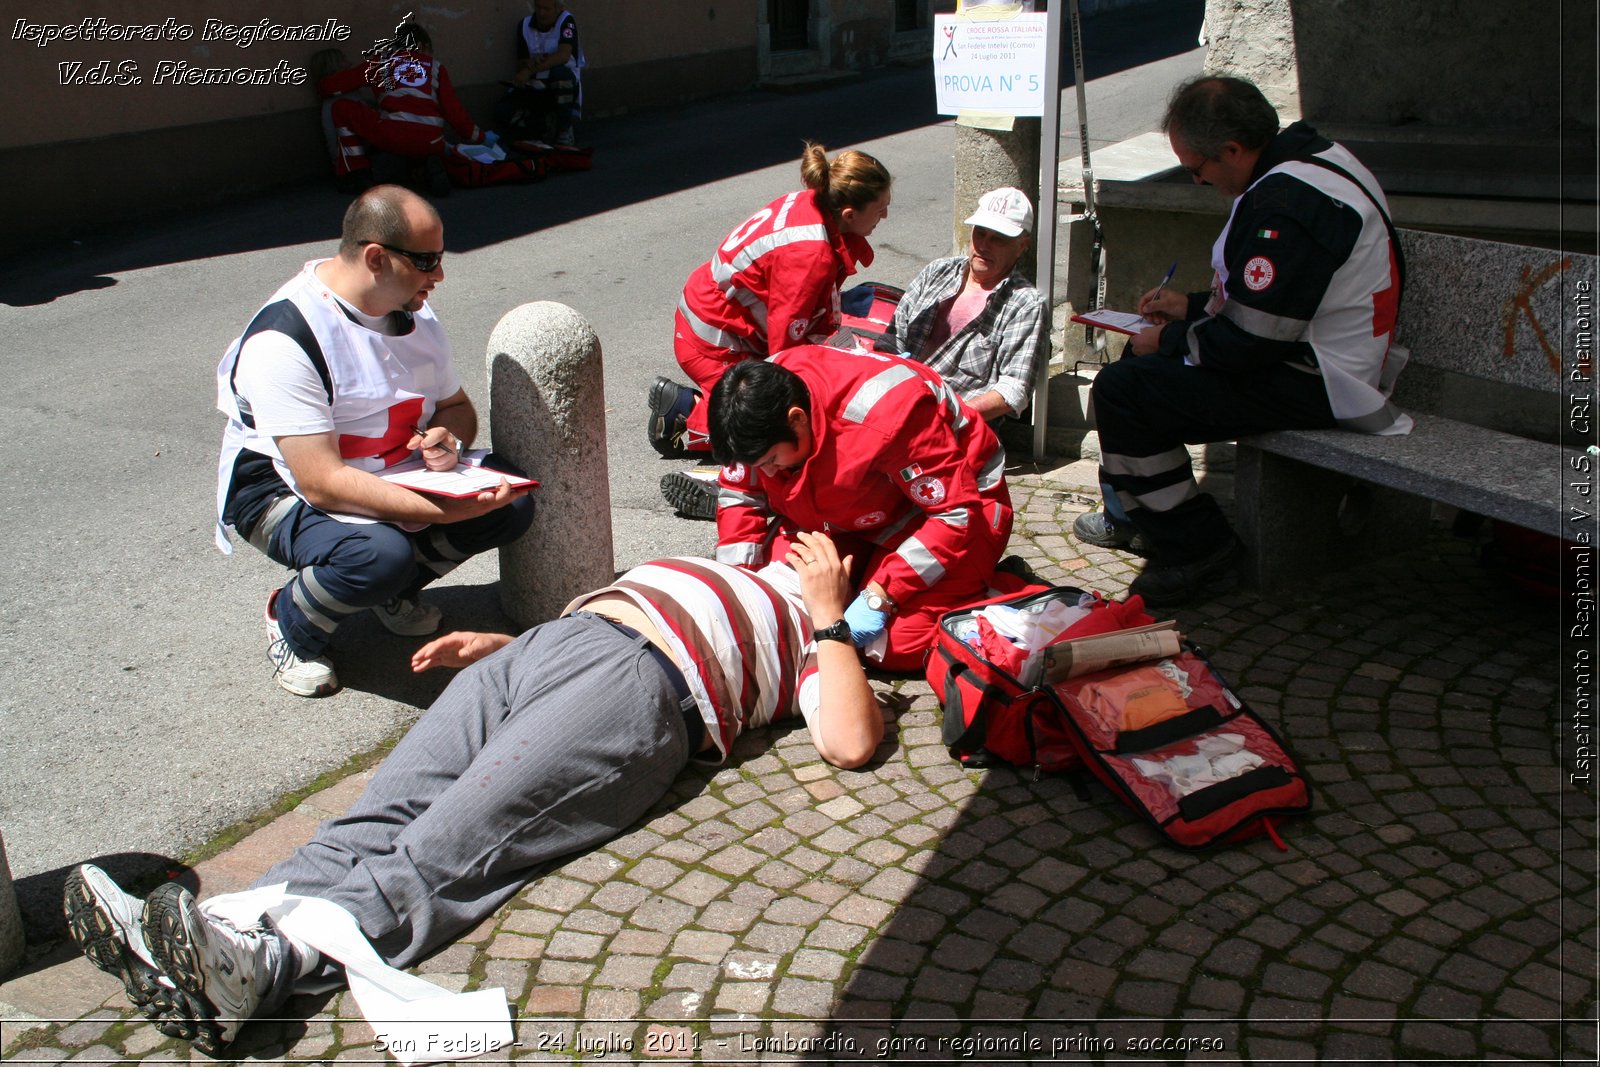 San Fedele - 24 luglio 2011 - Lombardia, gara regionale primo soccorso -  Croce Rossa Italiana - Ispettorato Regionale Volontari del Soccorso Piemonte